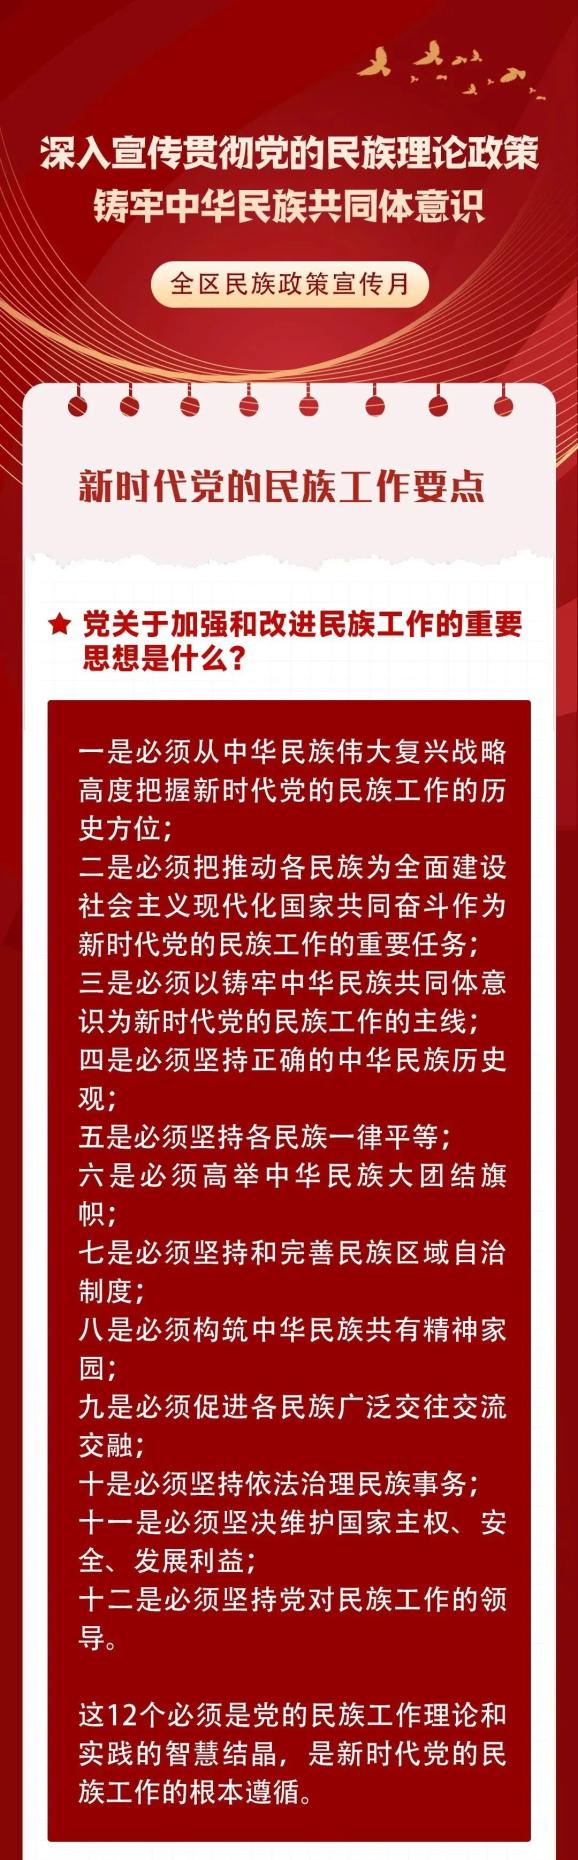 民族政策宣传月深入宣传贯彻党的民族理论政策铸牢中华民族共同体意识